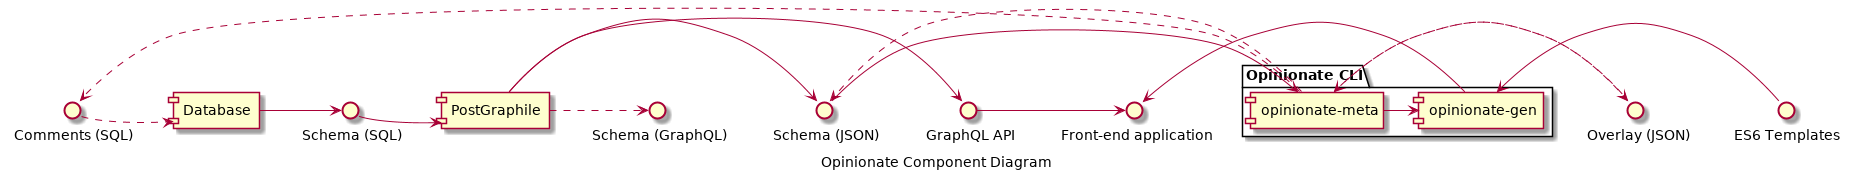 Opinionate UML component diagram